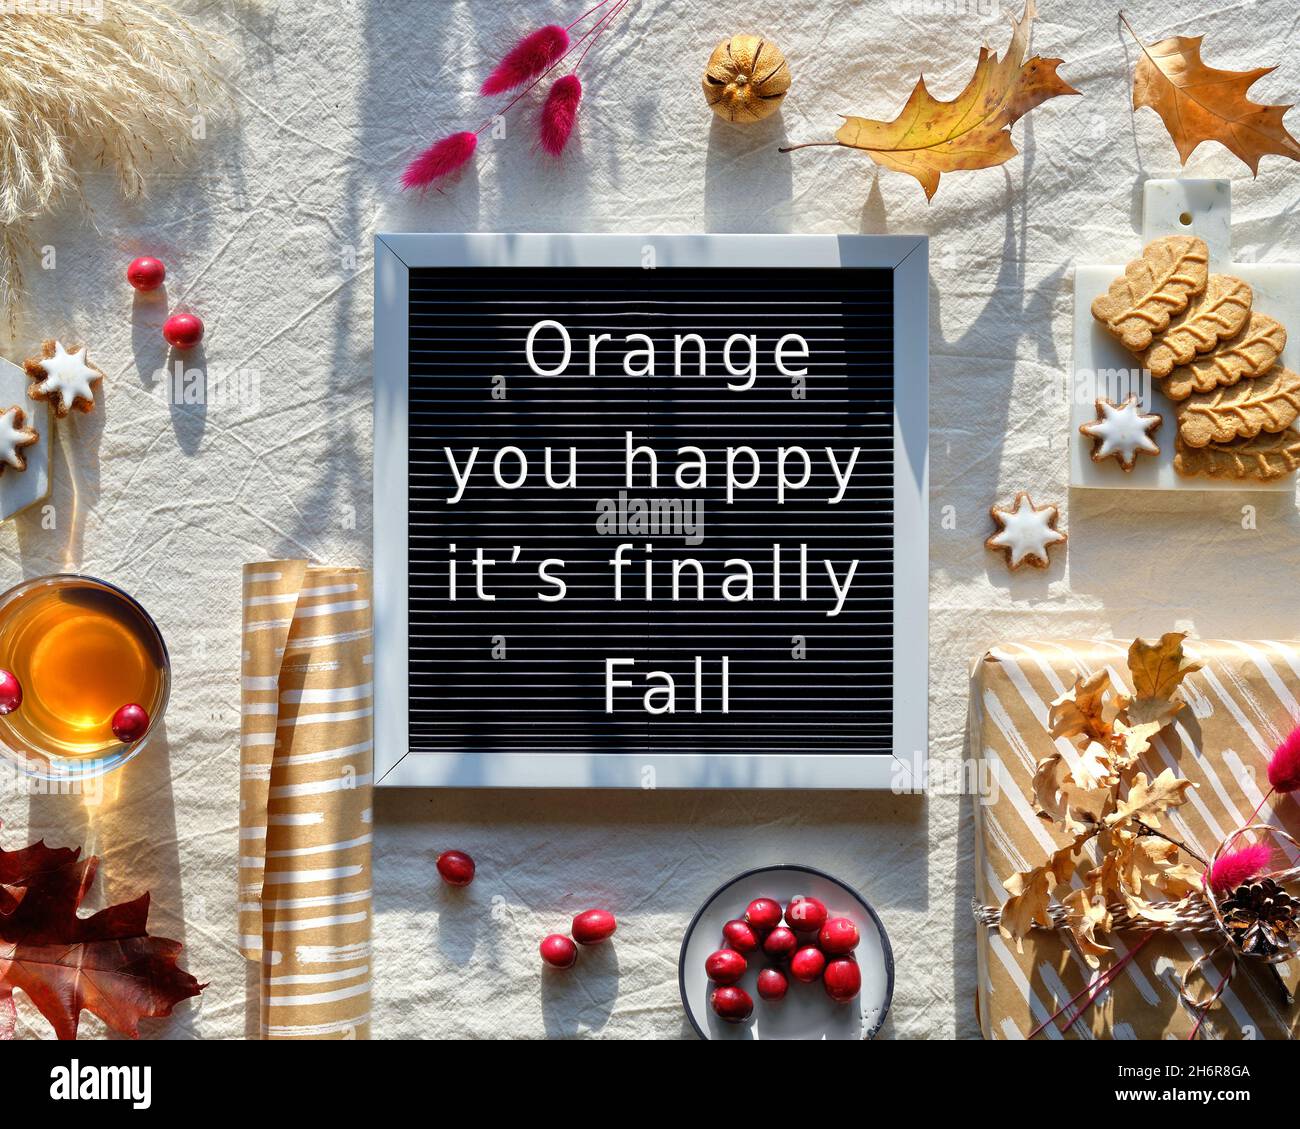 Tablero de texto Naranja Usted feliz es finalmente Otoño. Arándanos, galletas, té y hojas de roble seco. Foto de stock